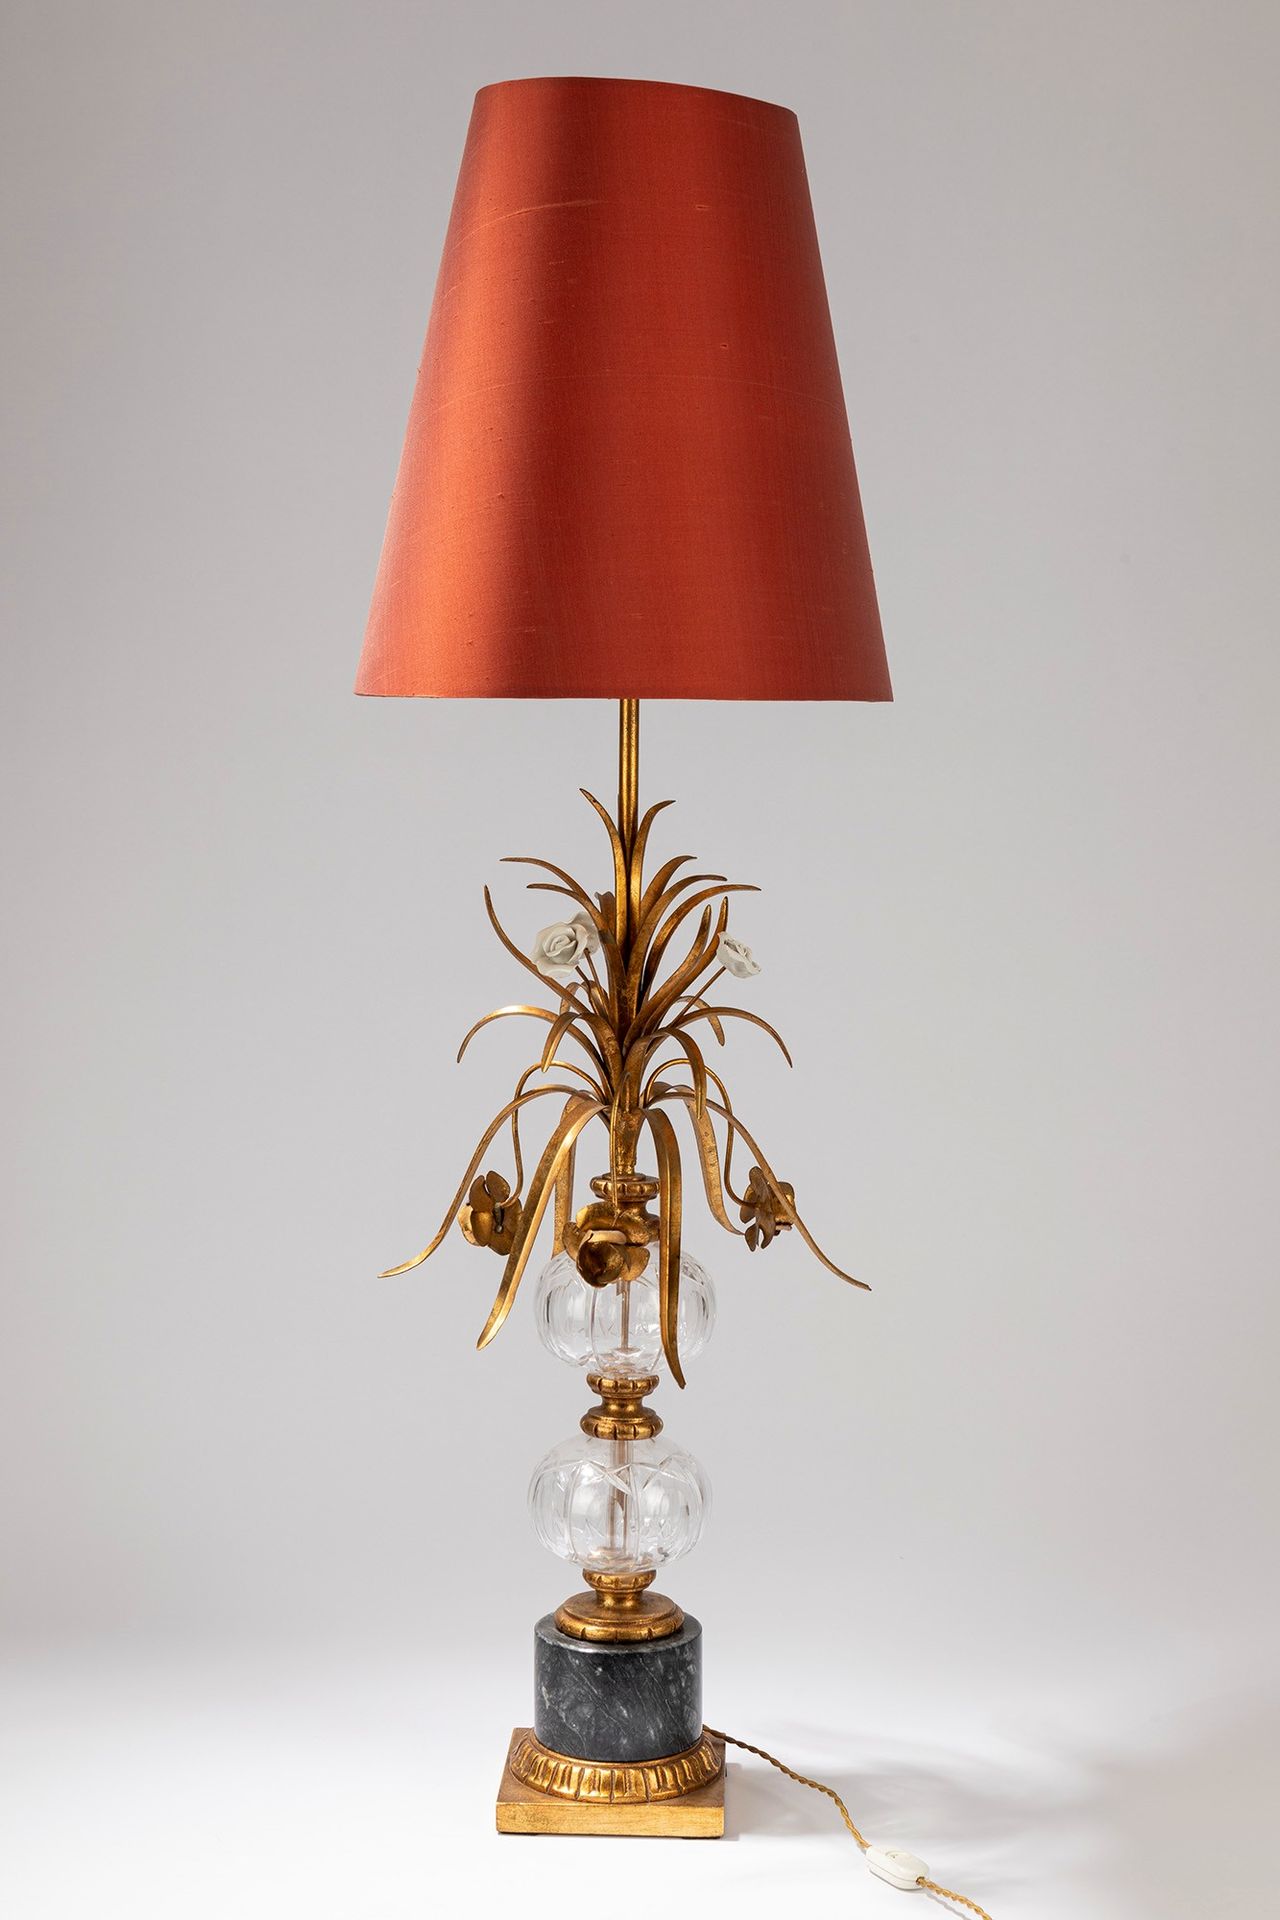 ITALIAN MANUFACTURE Lampe de table, 1950 ca.

Dm cm 48, H cm 114
métal doré avec&hellip;